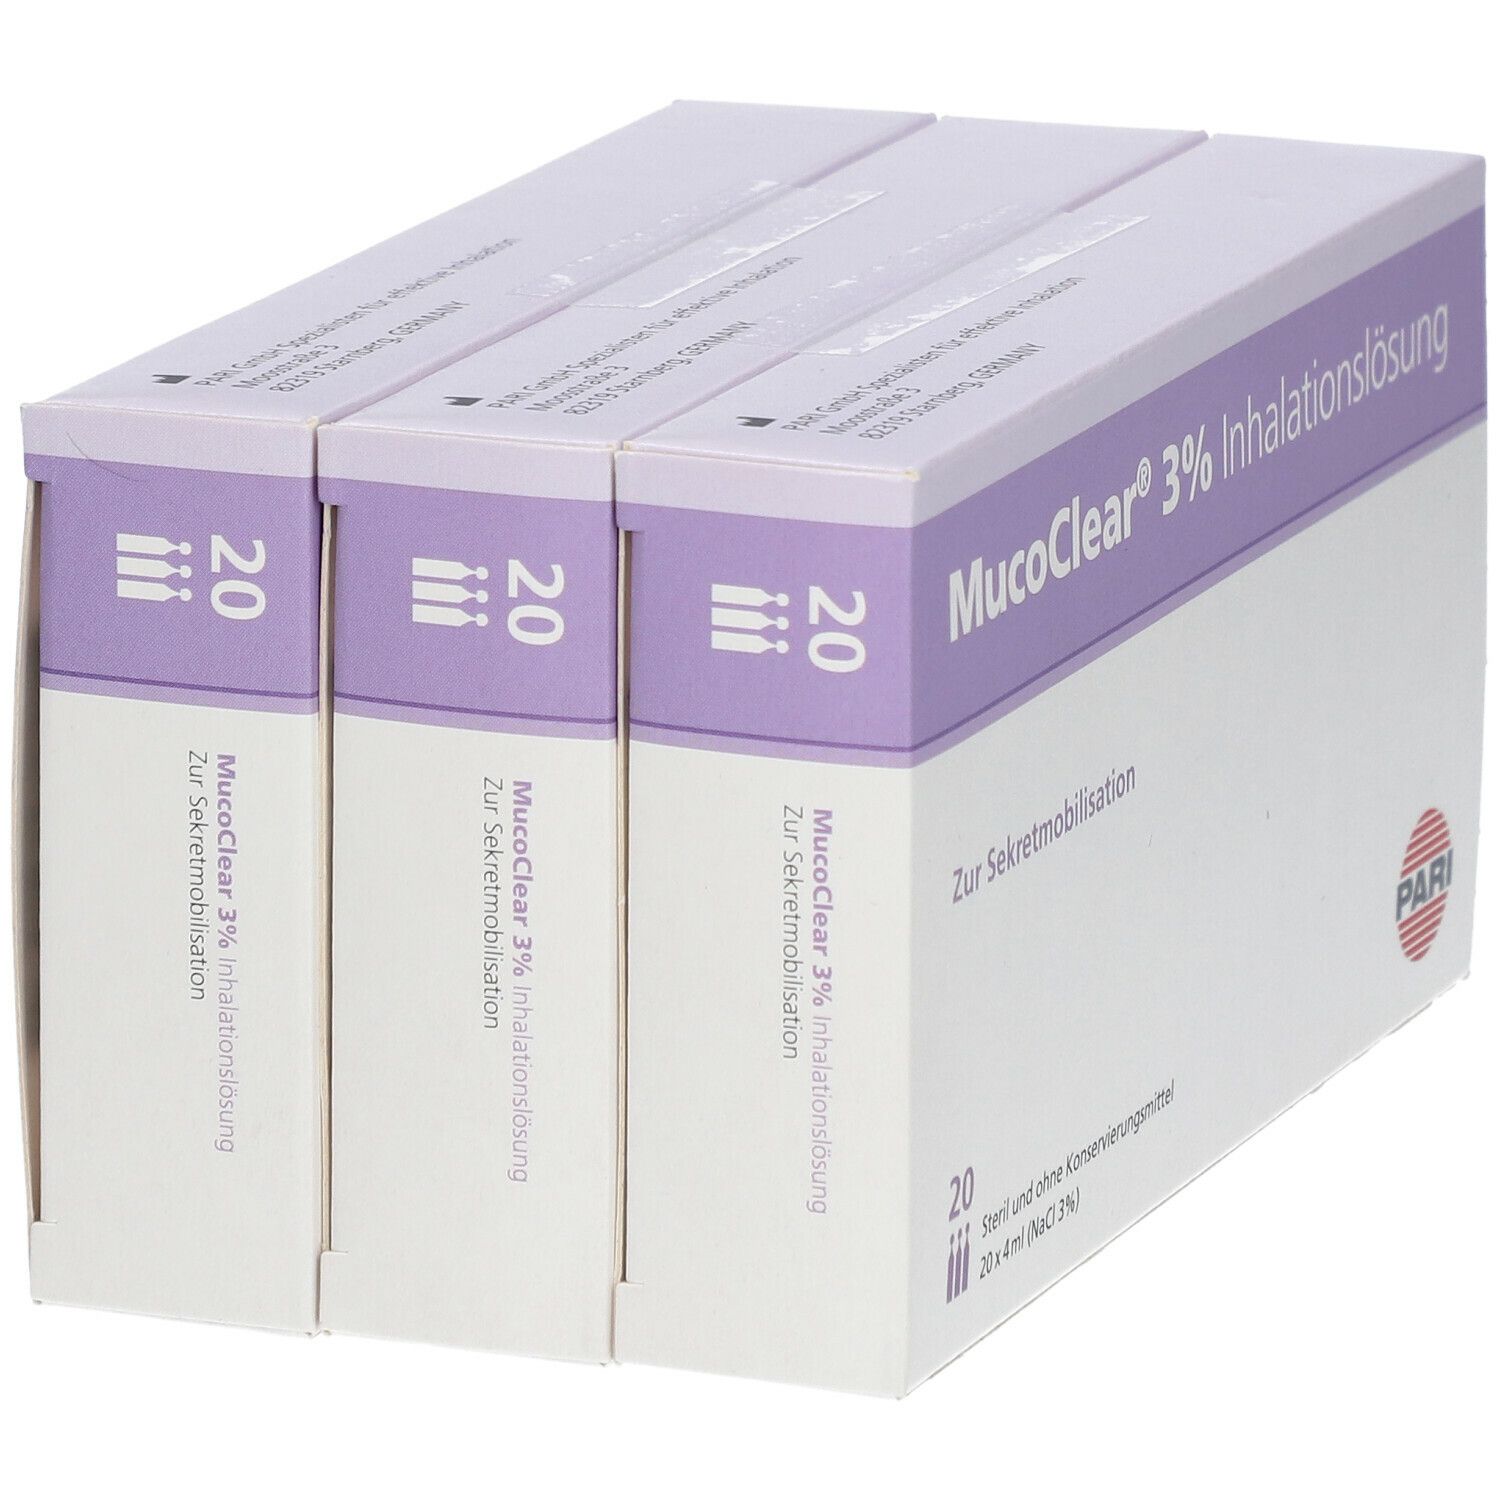 MucoClear® 3% Inhalationslösung